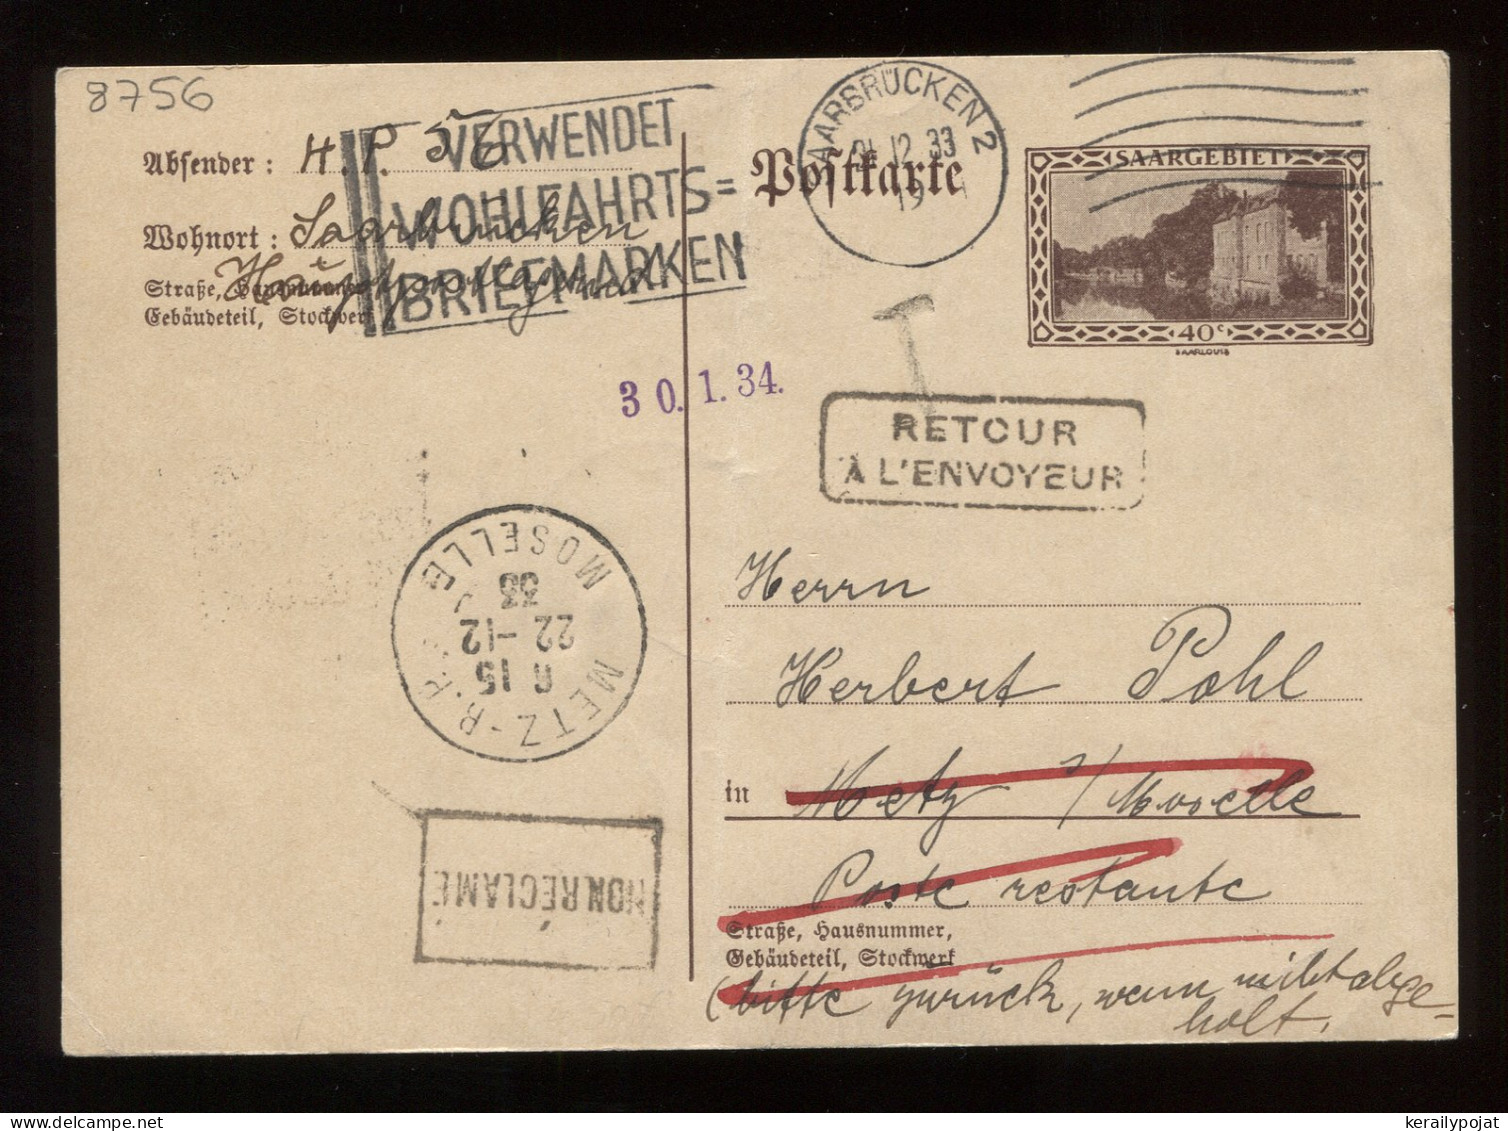 Saargebiet 1933 Saarbrucken 2 Returned Stationery Card__(8756) - Postal Stationery